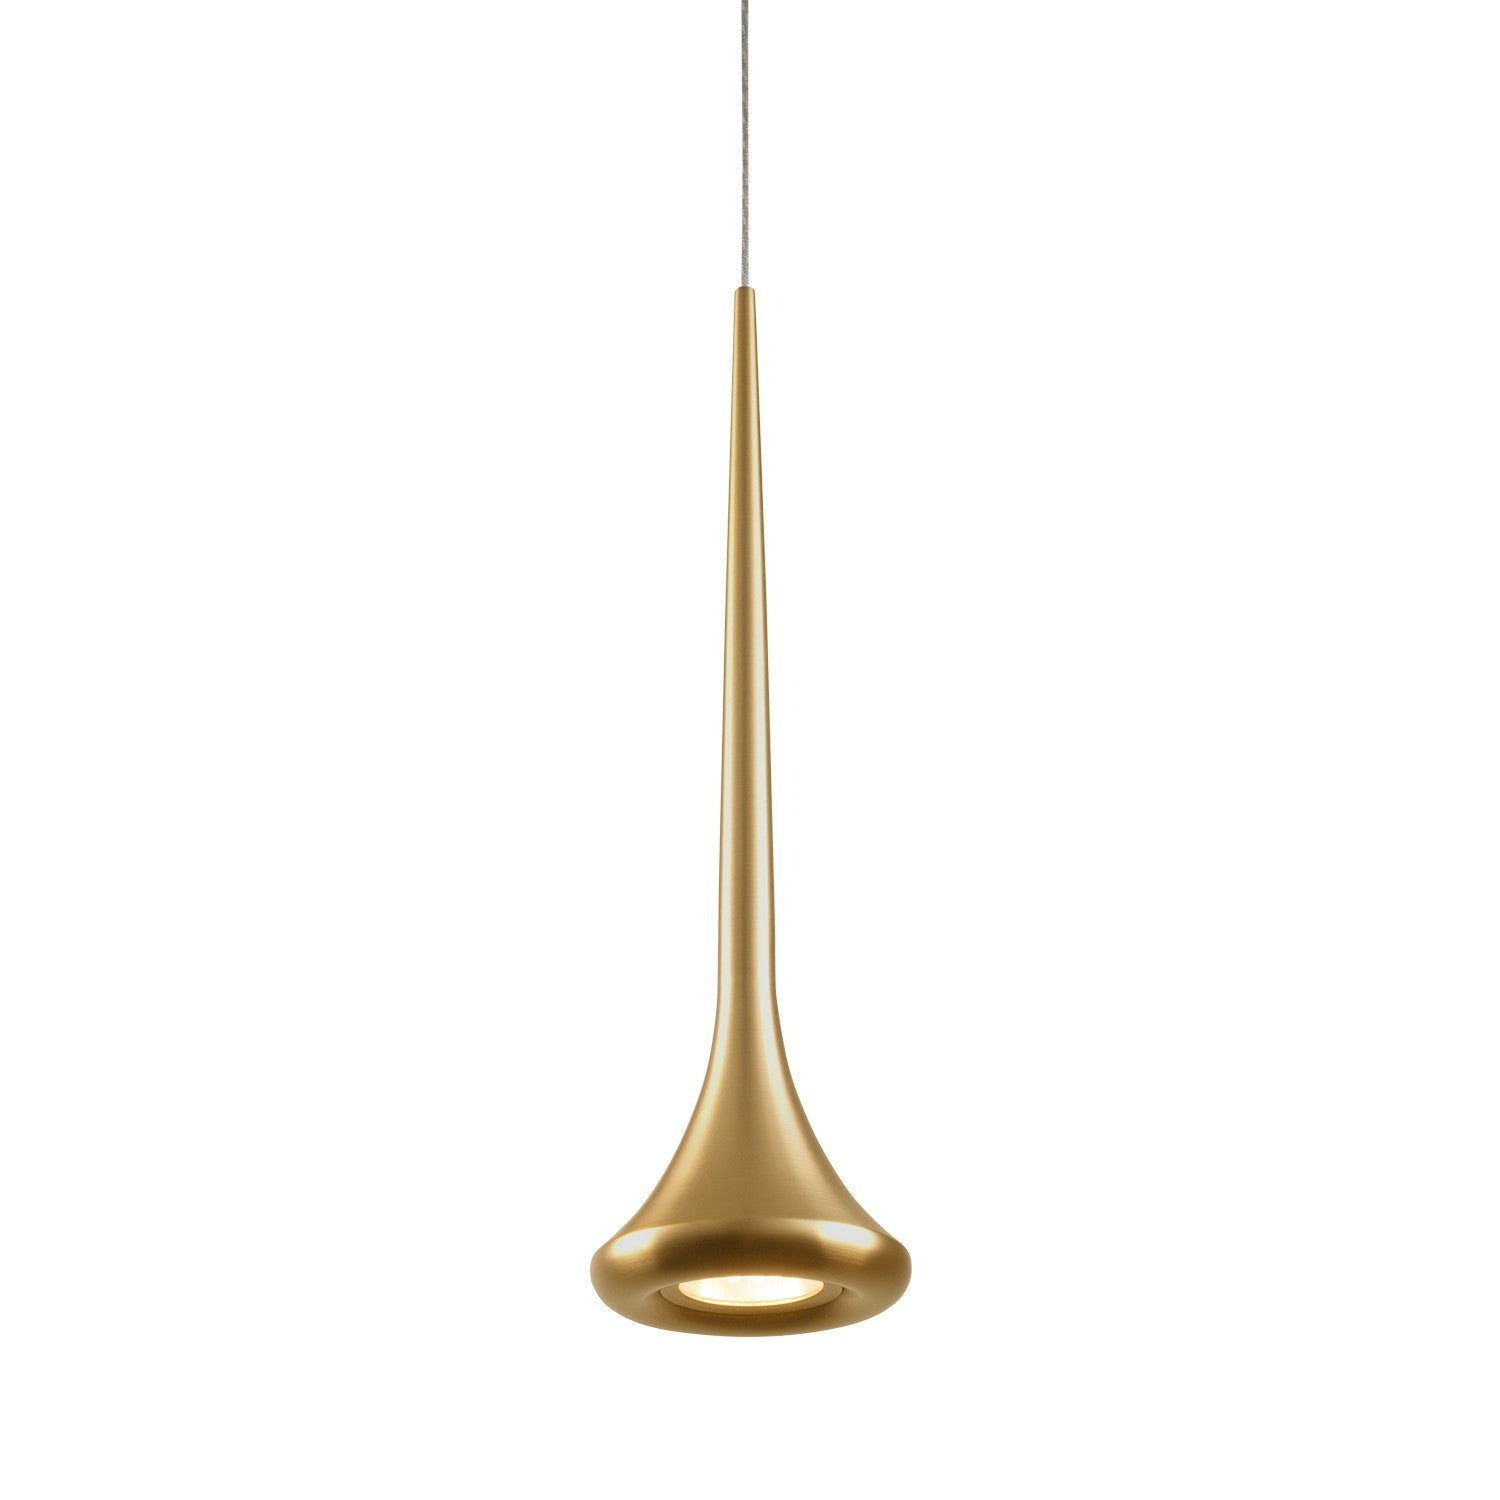 Kuzco Canada - LED Pendant - Bach - Brushed Gold/Chrome- Union Lighting Luminaires Decor